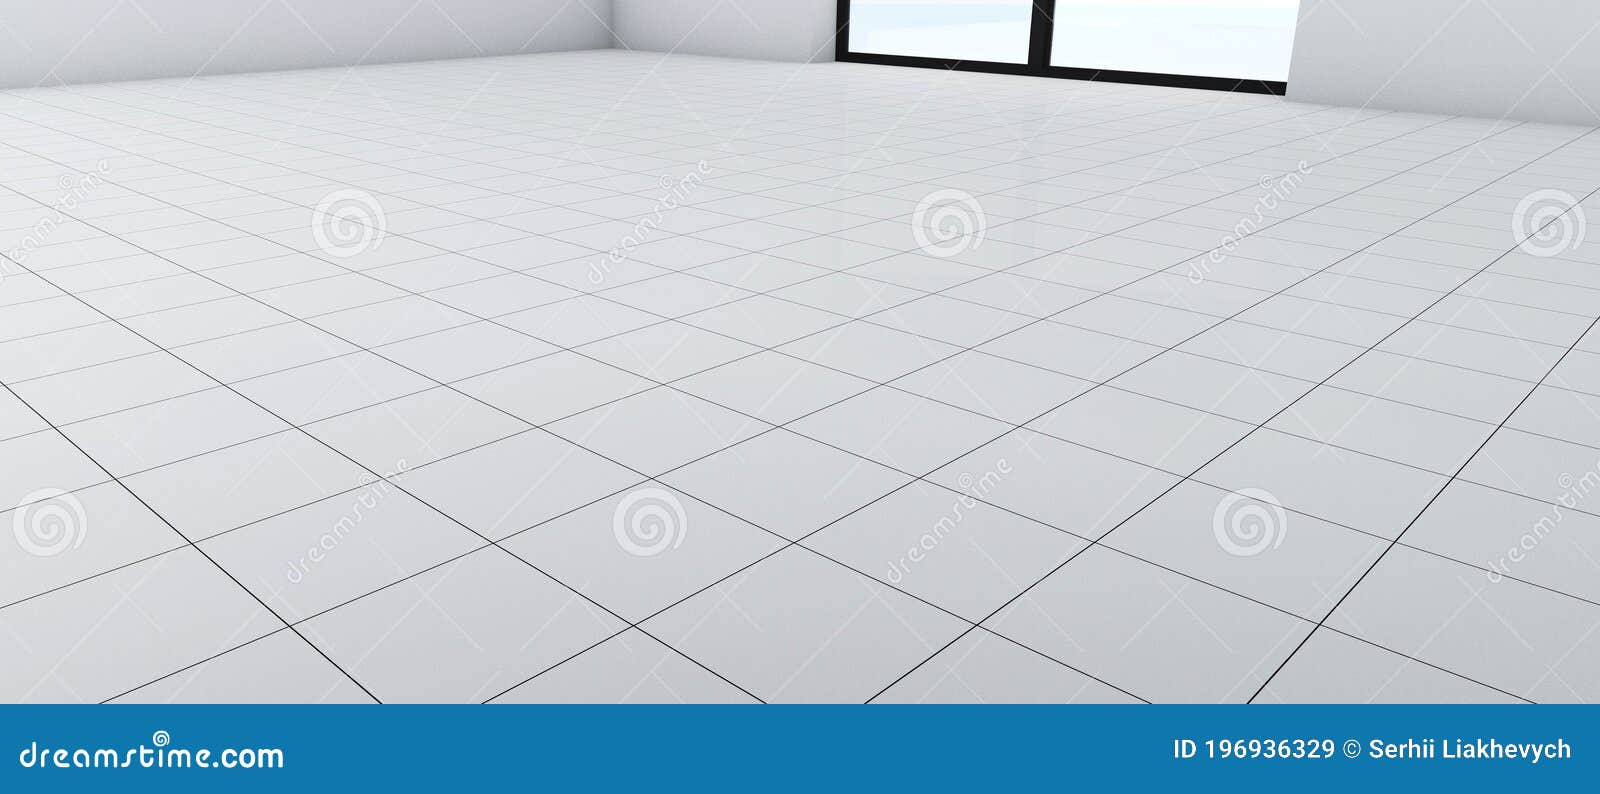 maximaal NieuwZeeland Veronderstellen Witte Vloer Met Keramische Tegels in Perspectief. Een Kamer Met Een Raam Op  De Vloer Met Een Schone Witte Glanzende Tegel Met Stock Afbeelding - Image  of vierkant, bevloering: 196936329